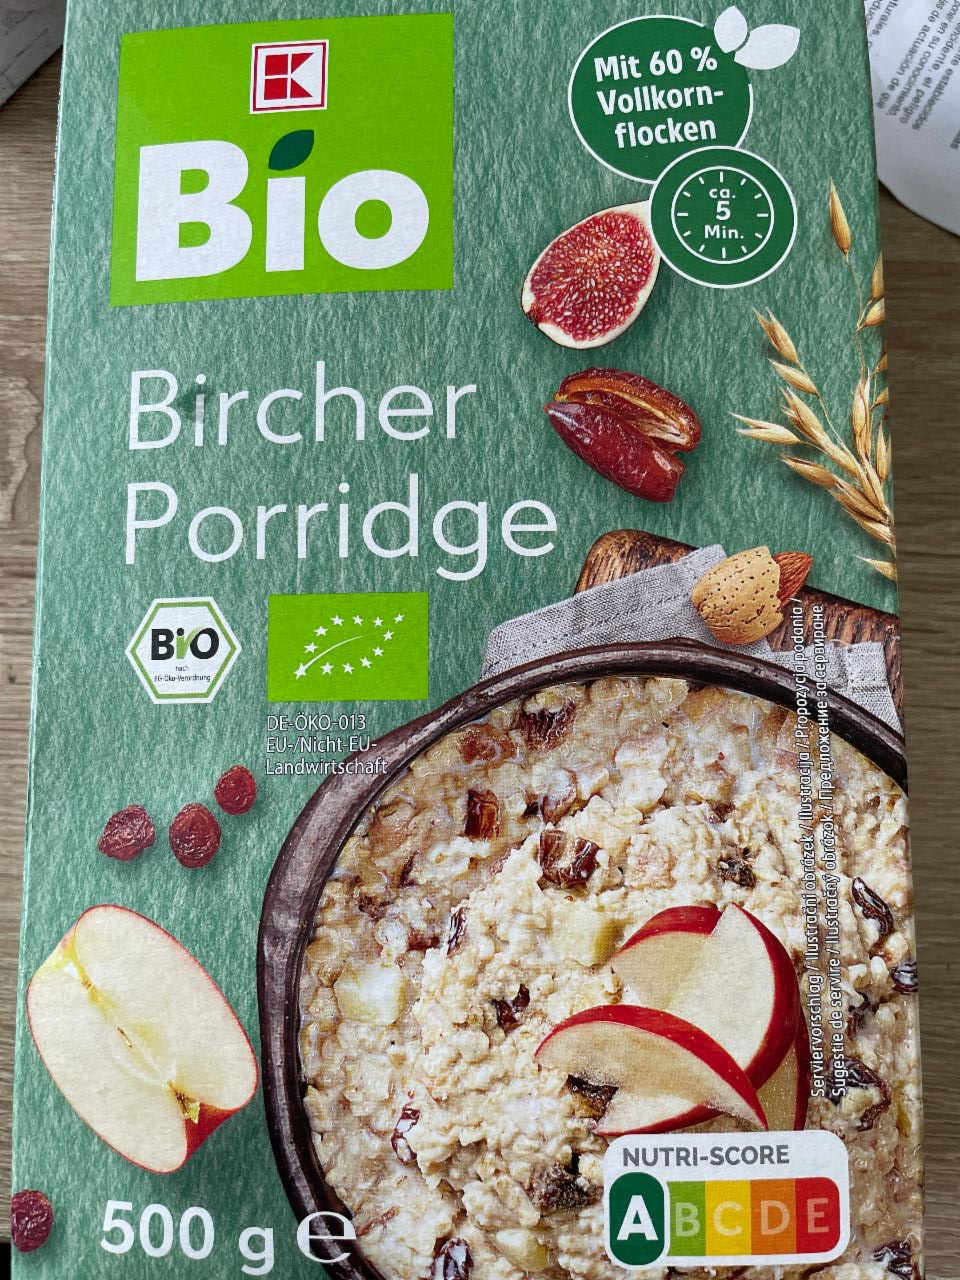 Fotografie - Bircher porridge K-Bio